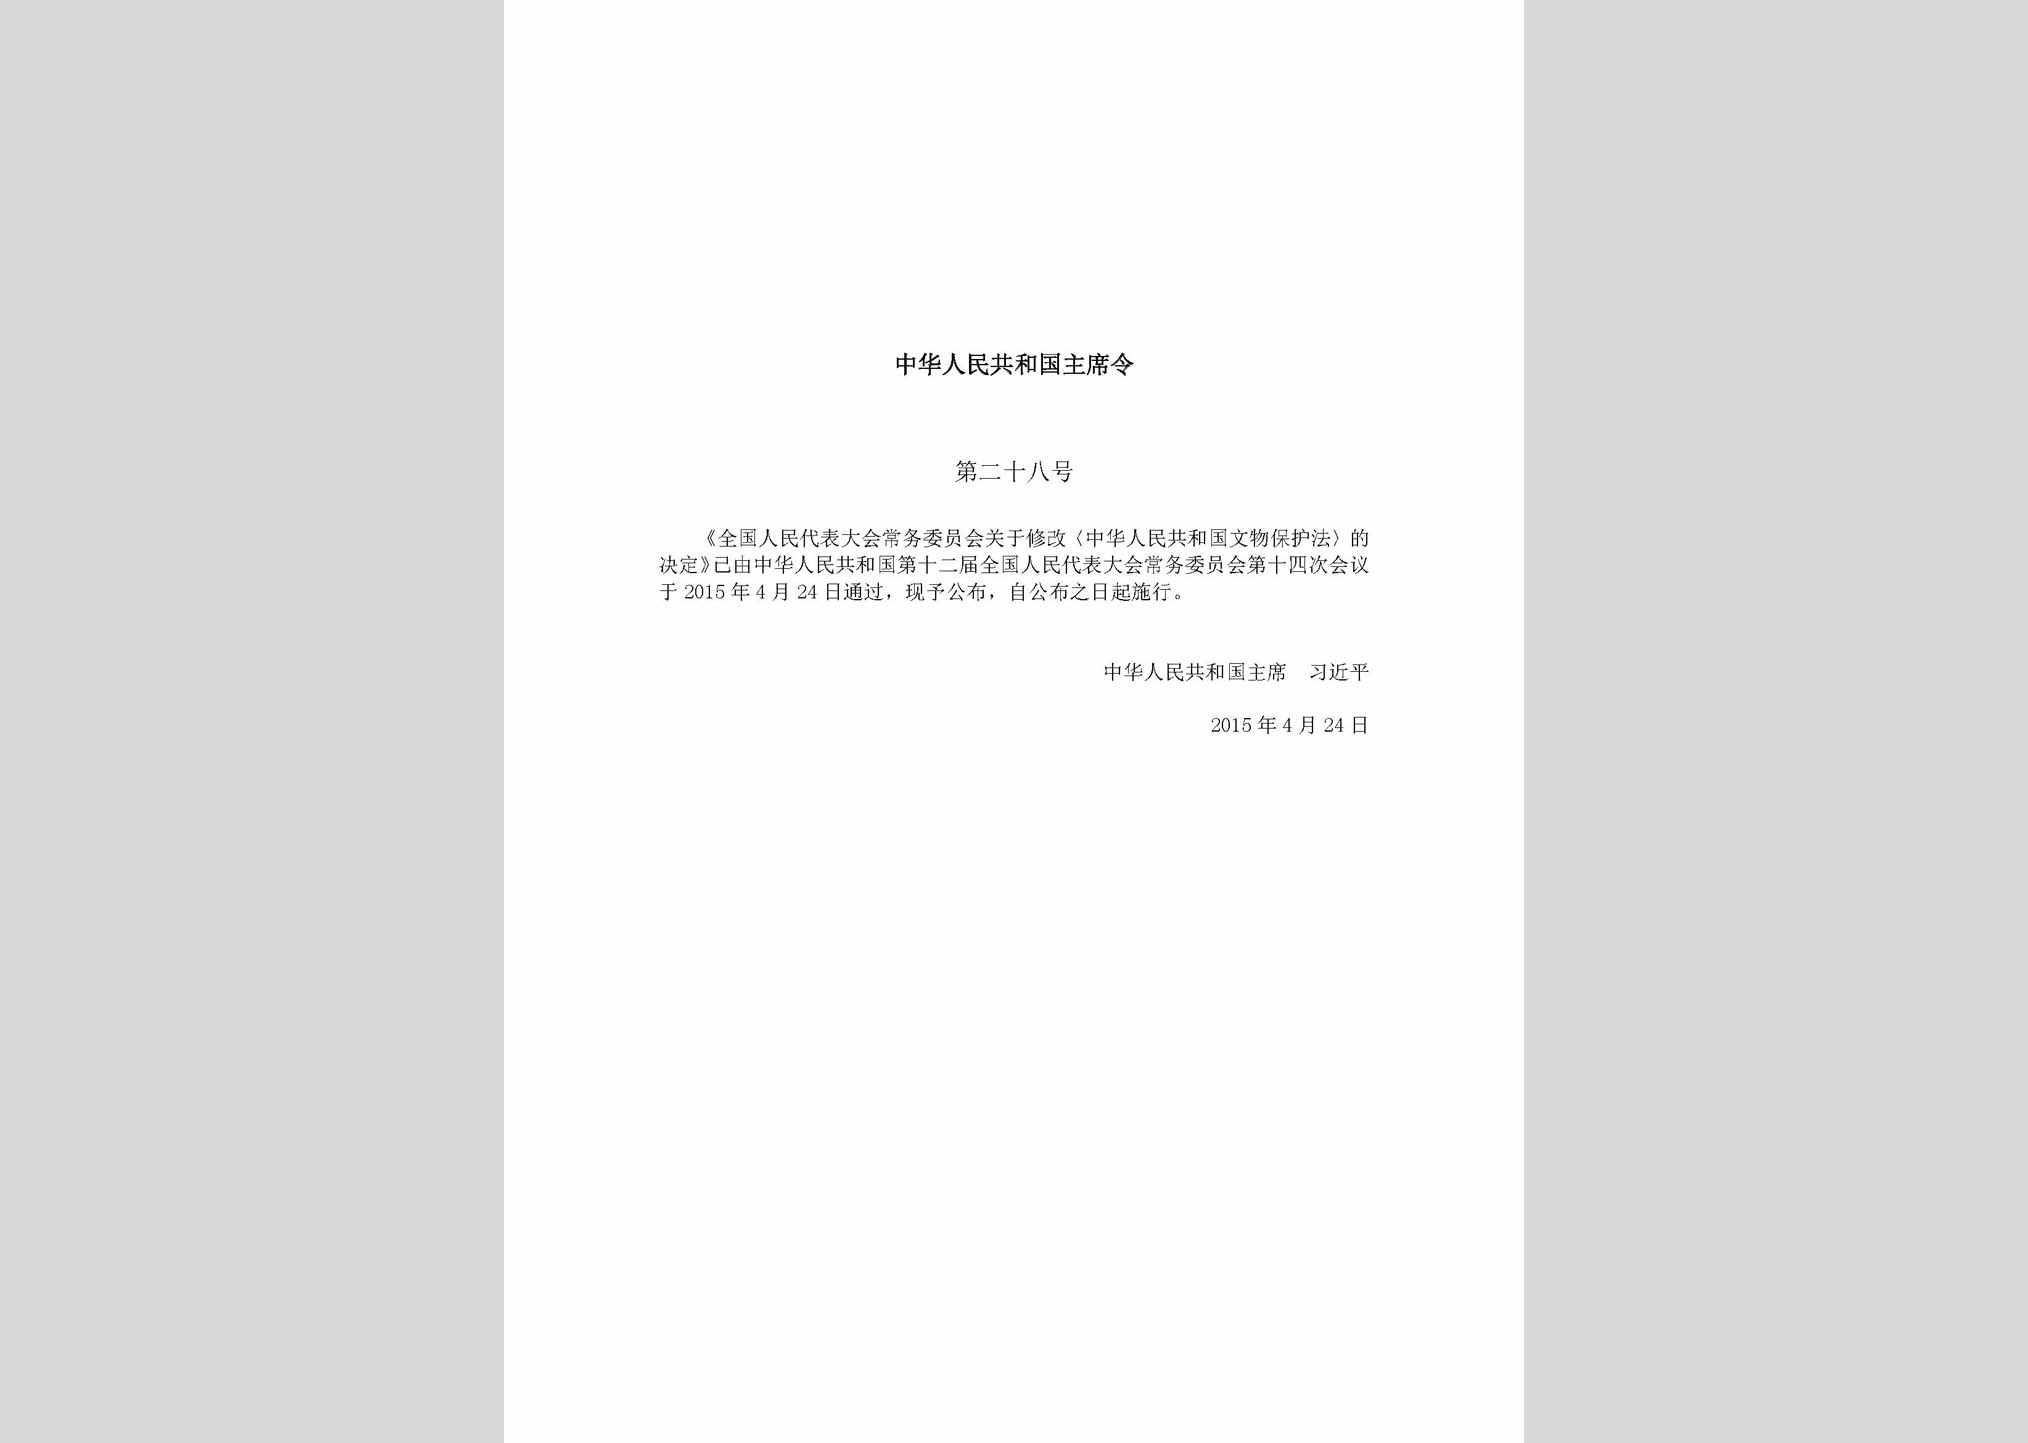 中华人民共和国主席令第二十八号：全国人民代表大会常务委员会关于修改《中华人民共和国文物保护法》的决定